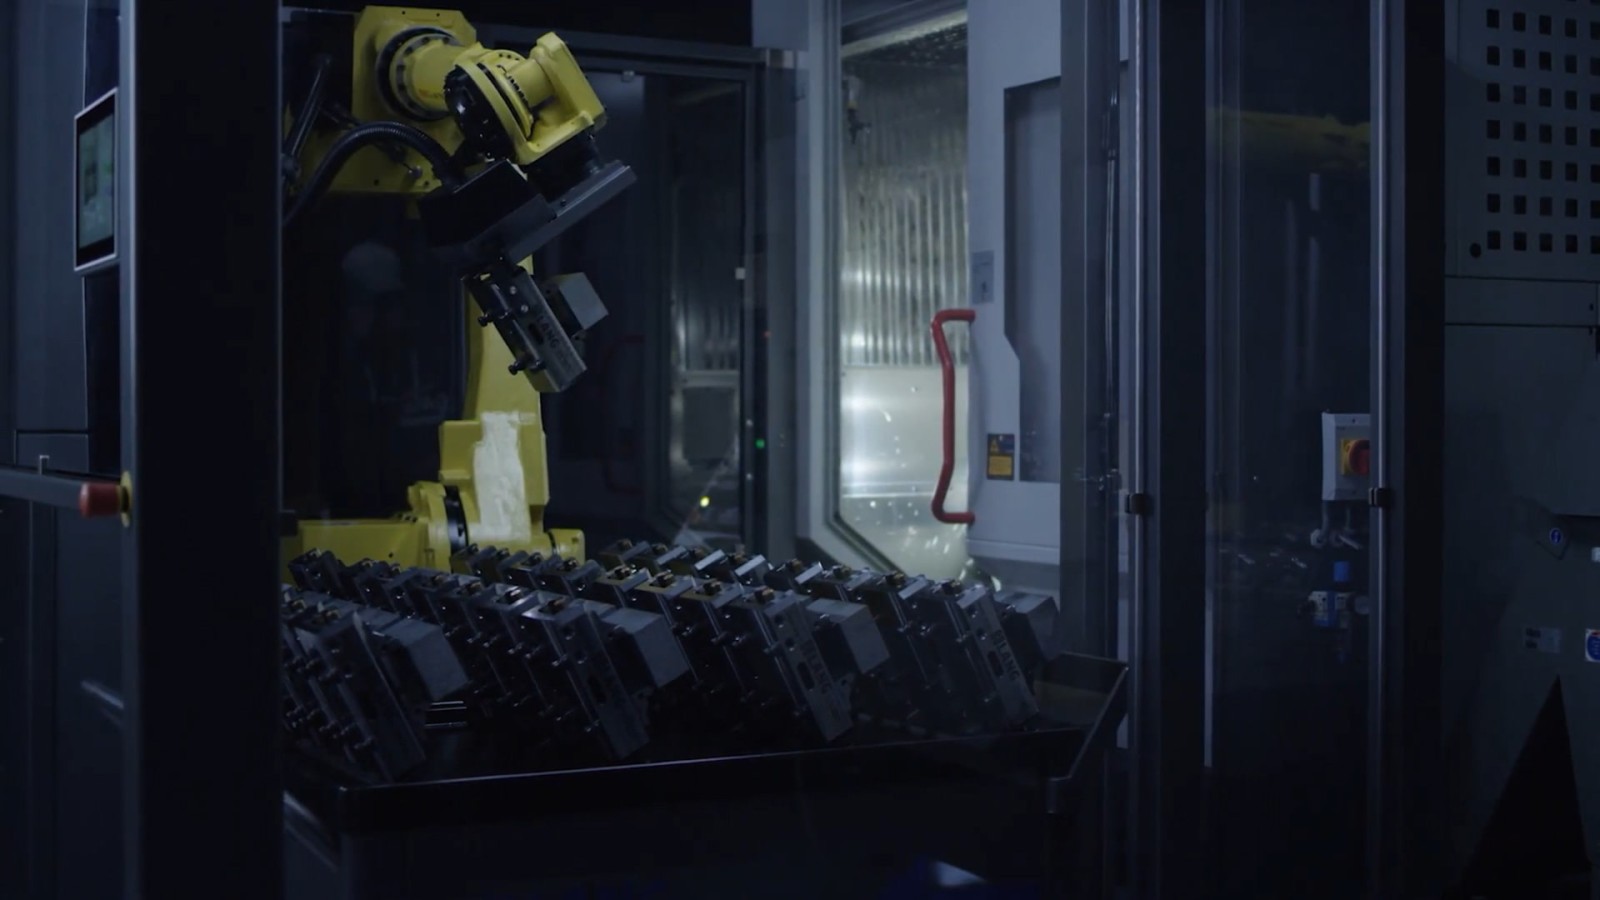 RoboTrex 96 - l'automazione in una nuova dimensione